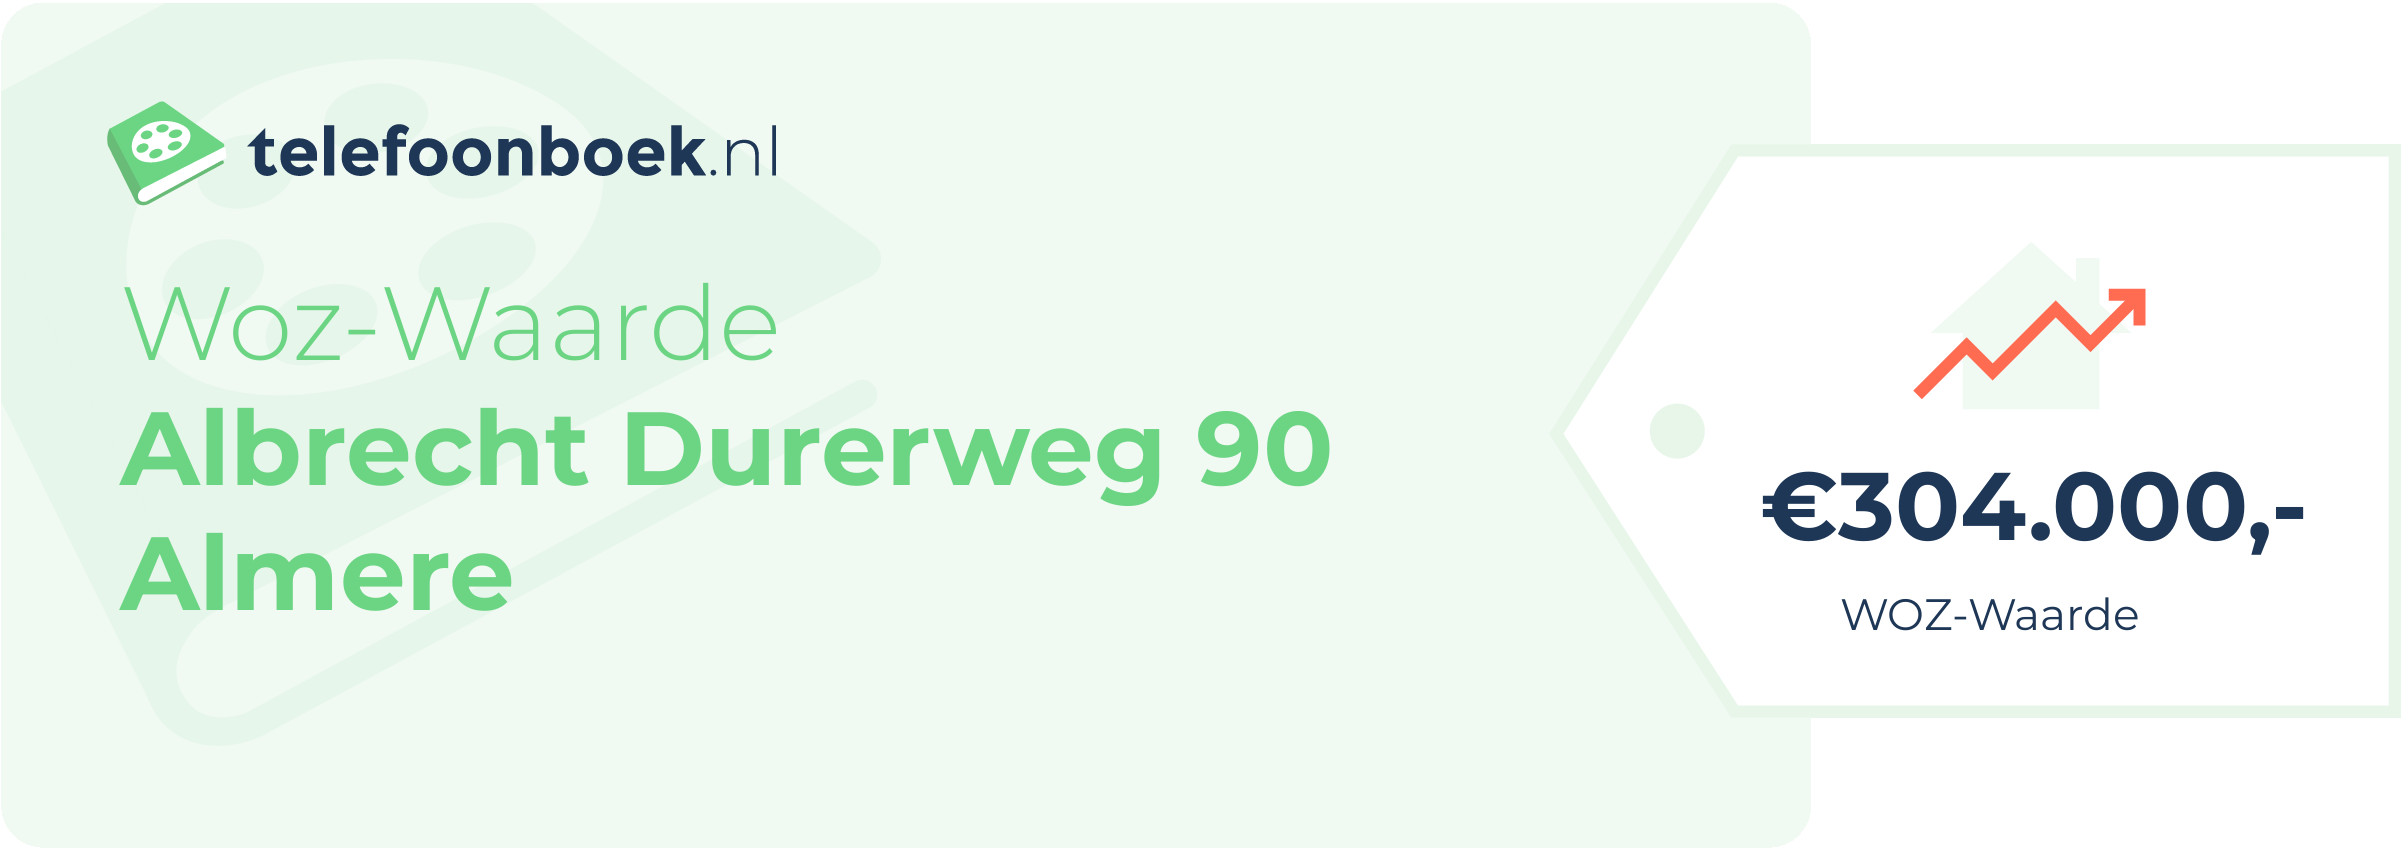 WOZ-waarde Albrecht Durerweg 90 Almere